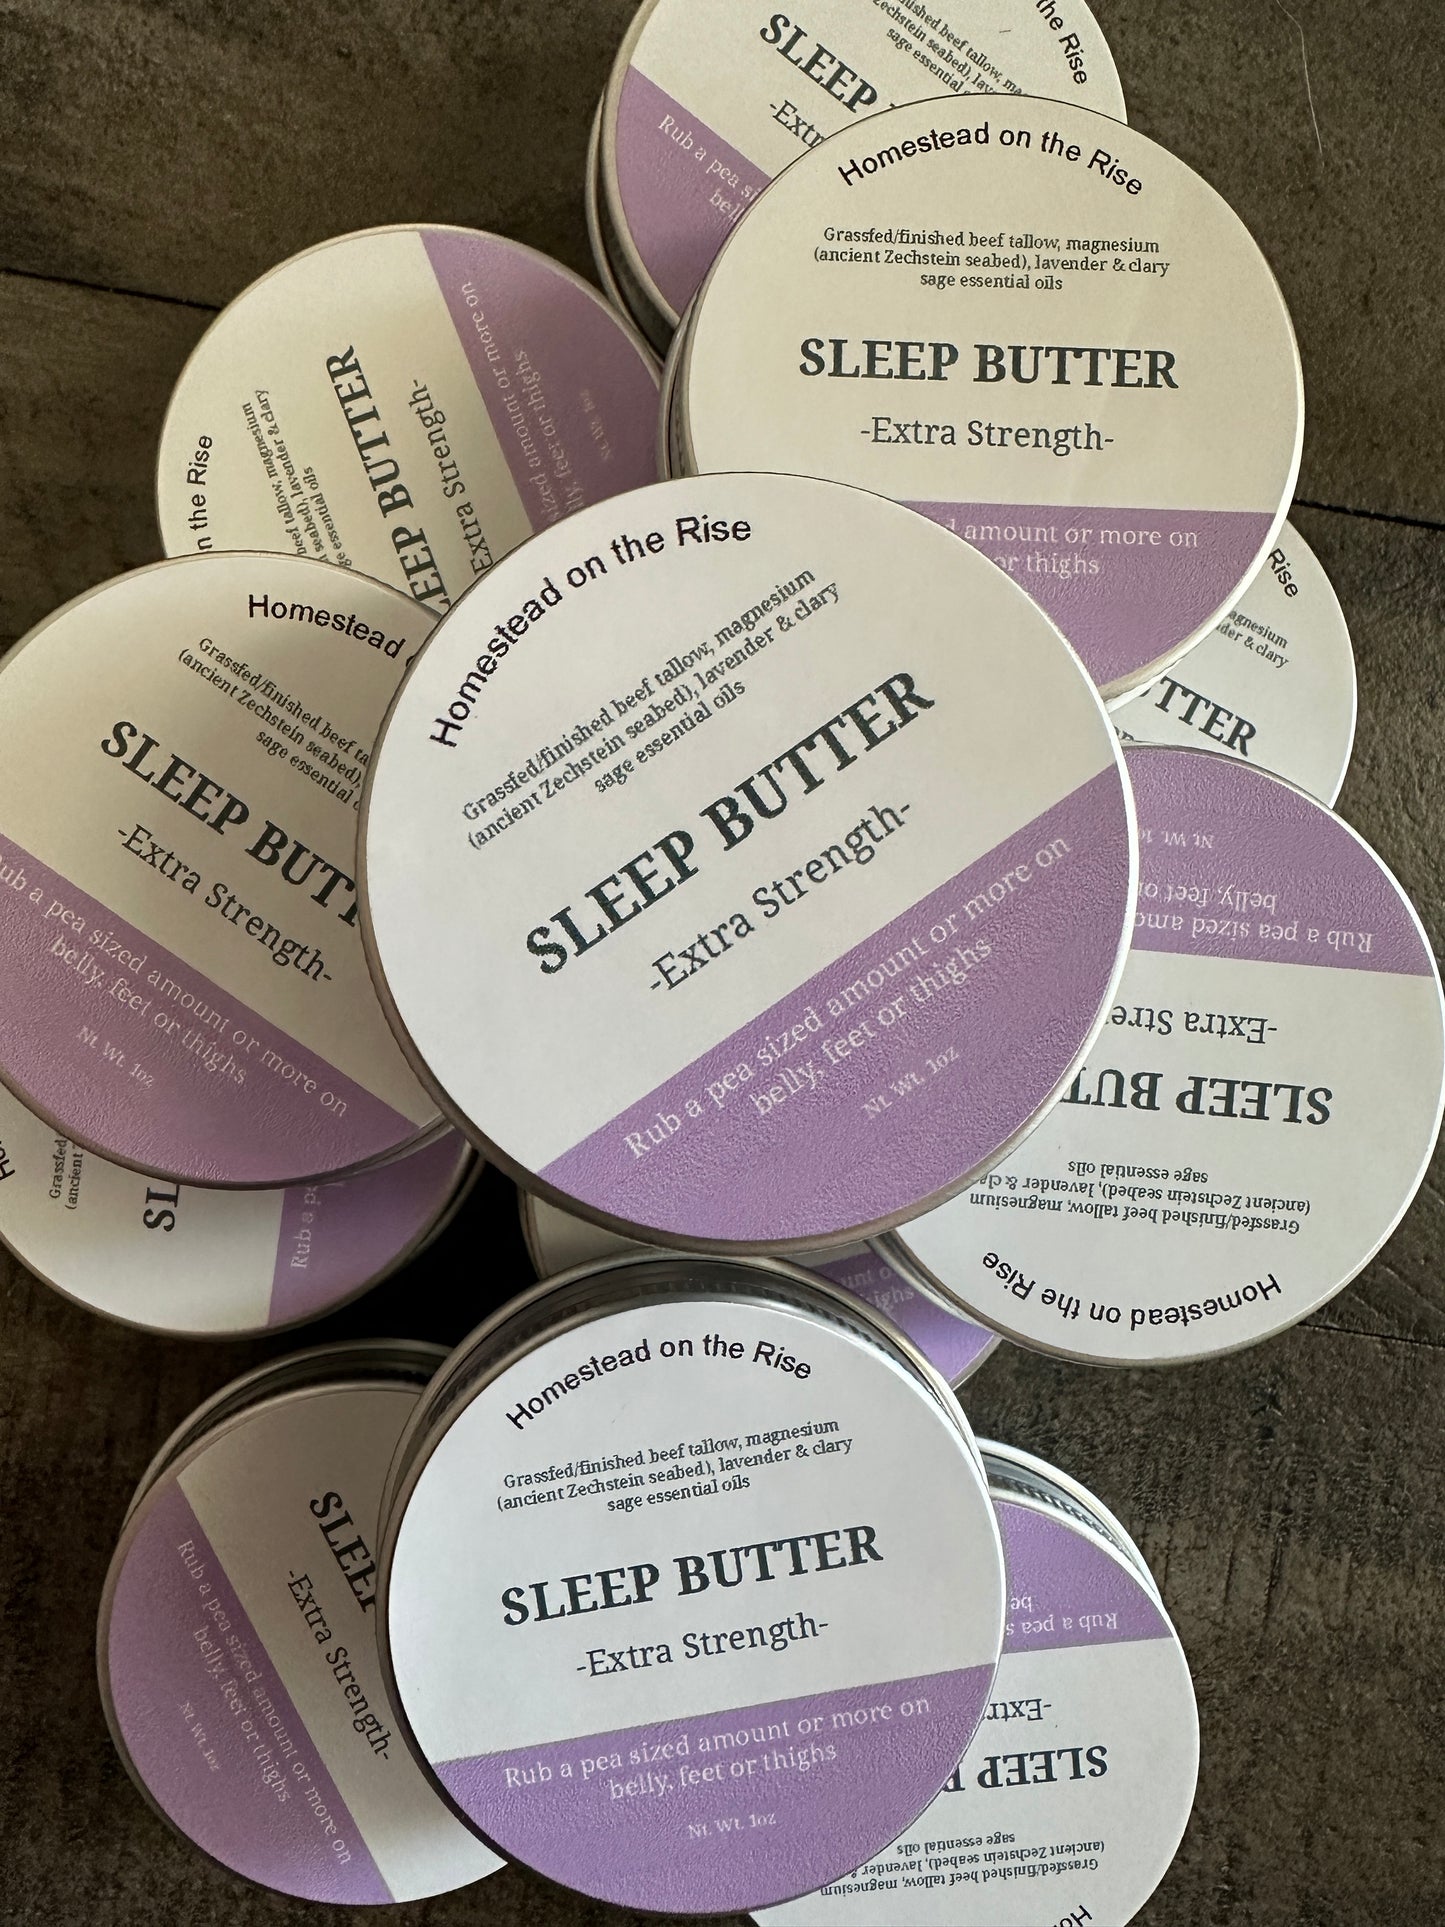 EXTRA STRENGTH sleep butter